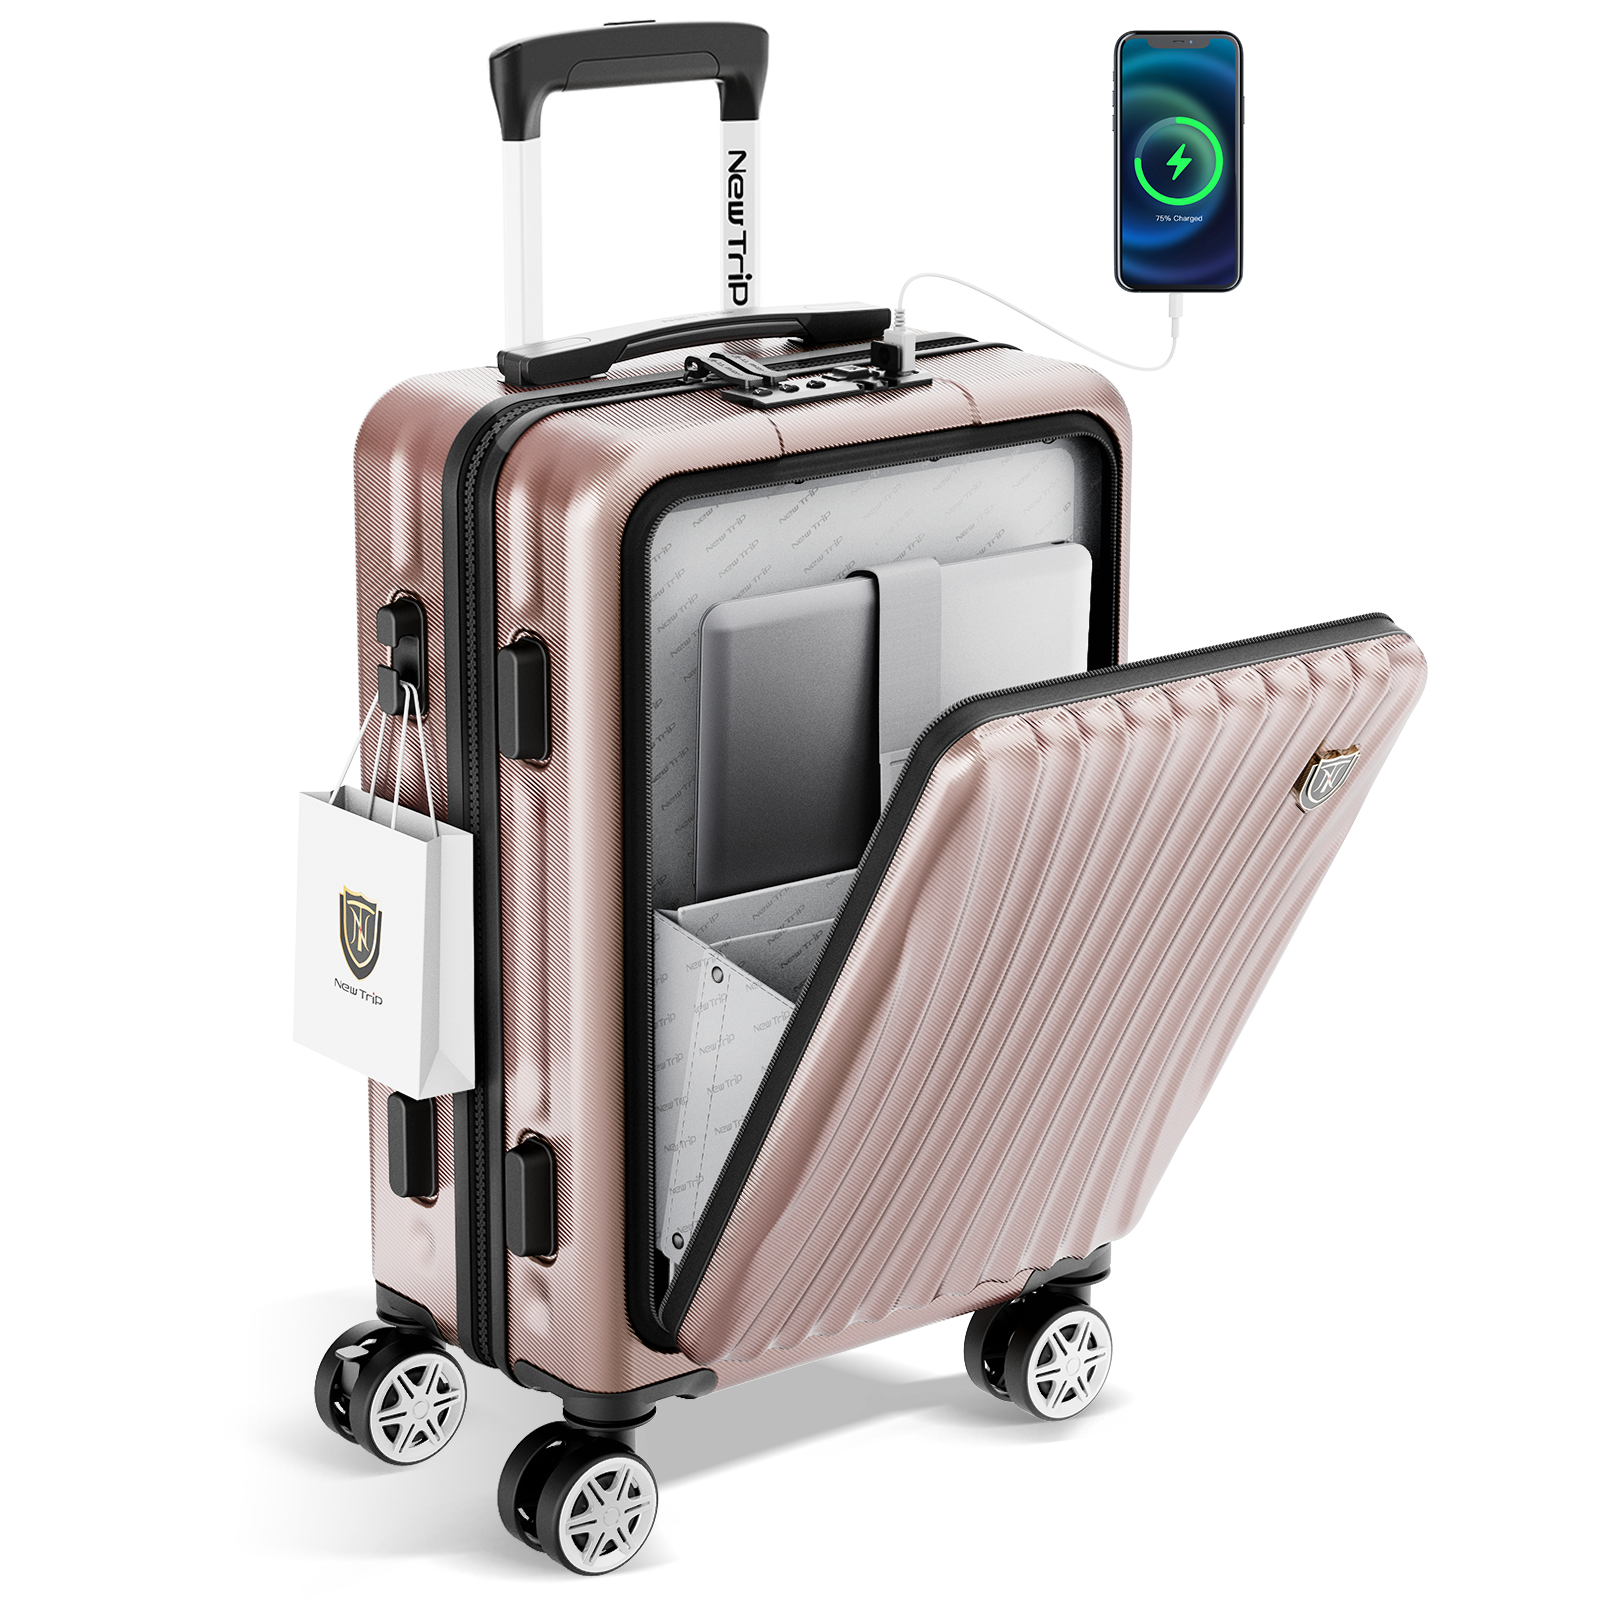 特典付き! USBポート付きキャリーケー スーツケース 40L Sサイズ - TSA 